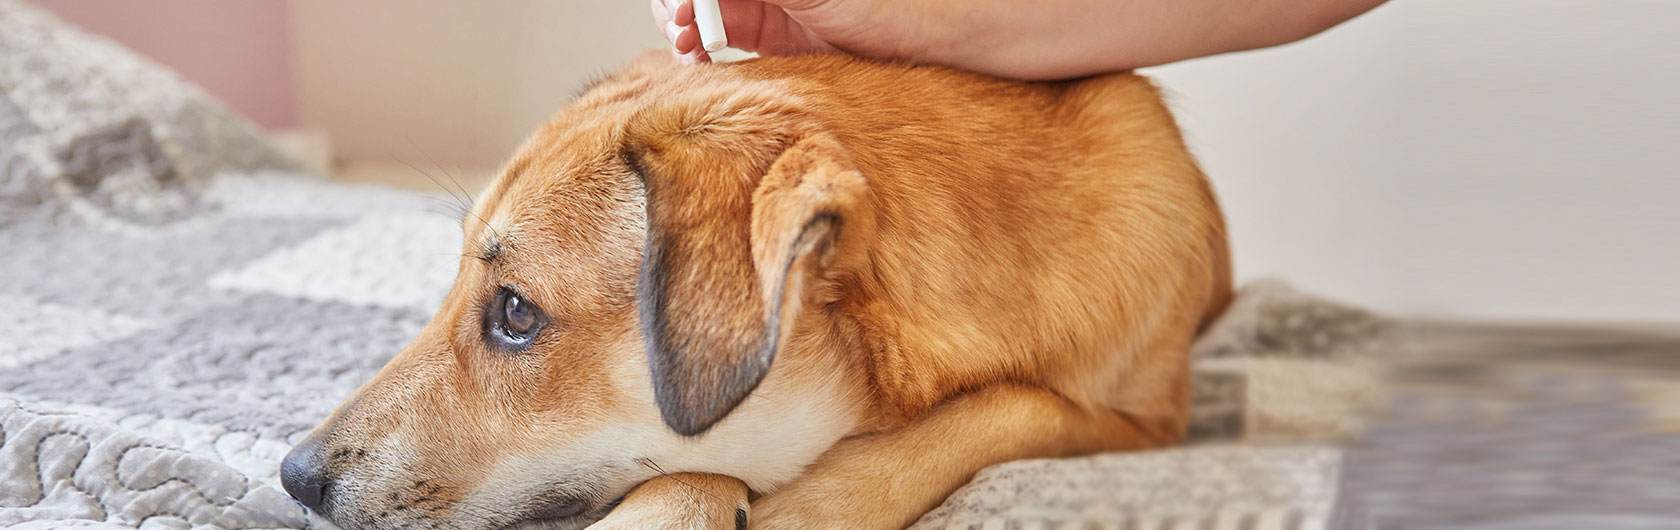 como prevenir las pulgas en perros y alimento para perros de calidad nutribon